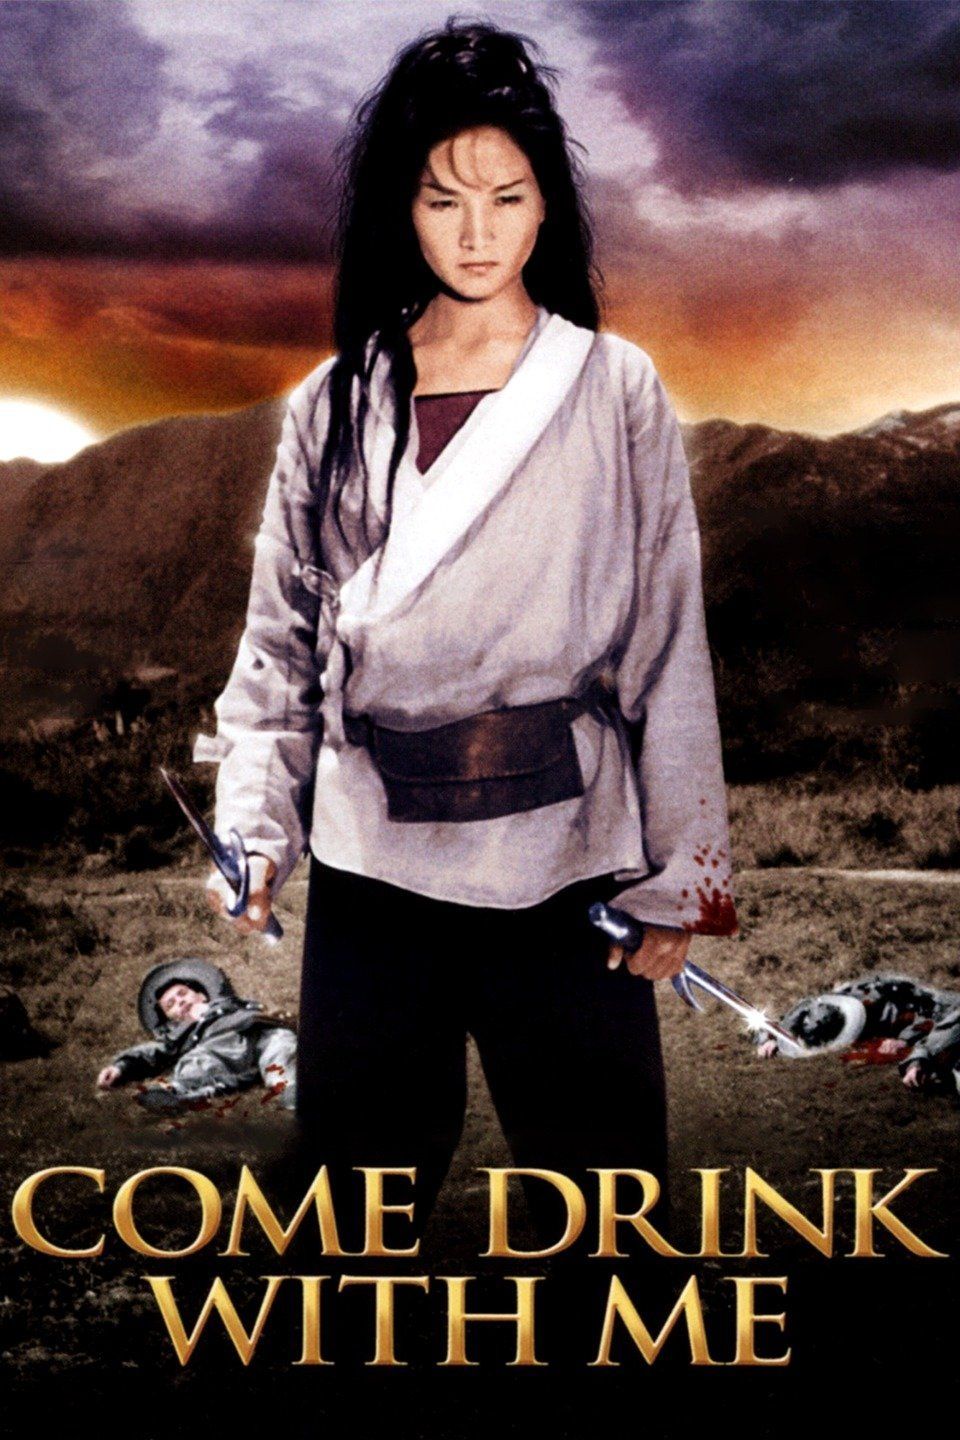 Wai nei chung ching (2010) Hong Kong movie poster